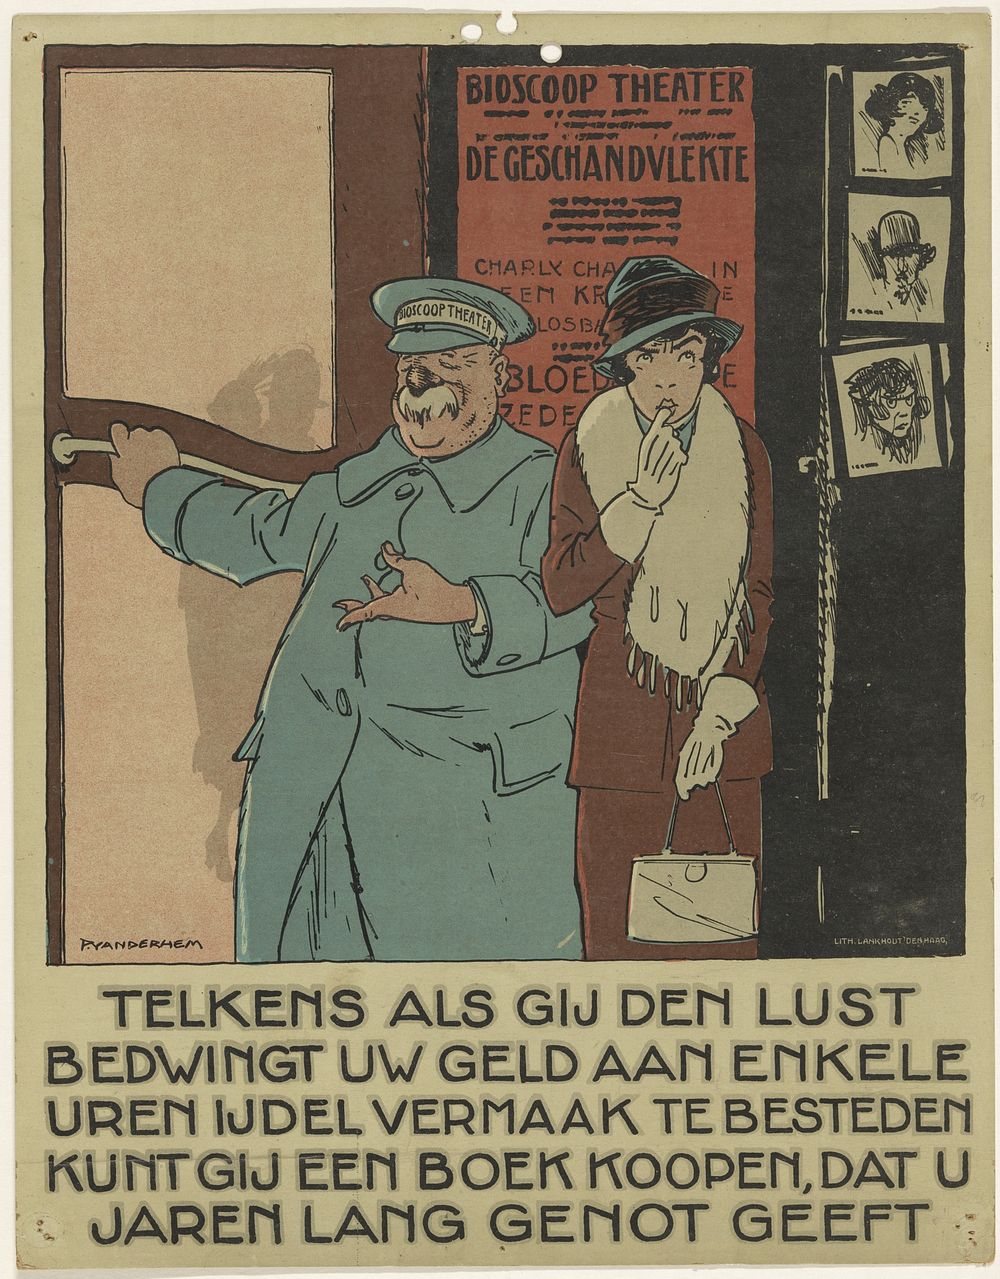 Portier voor een bioscooptheater (1921) by Piet van der Hem, Lankhout and Nederlandsche Uitgeversbond